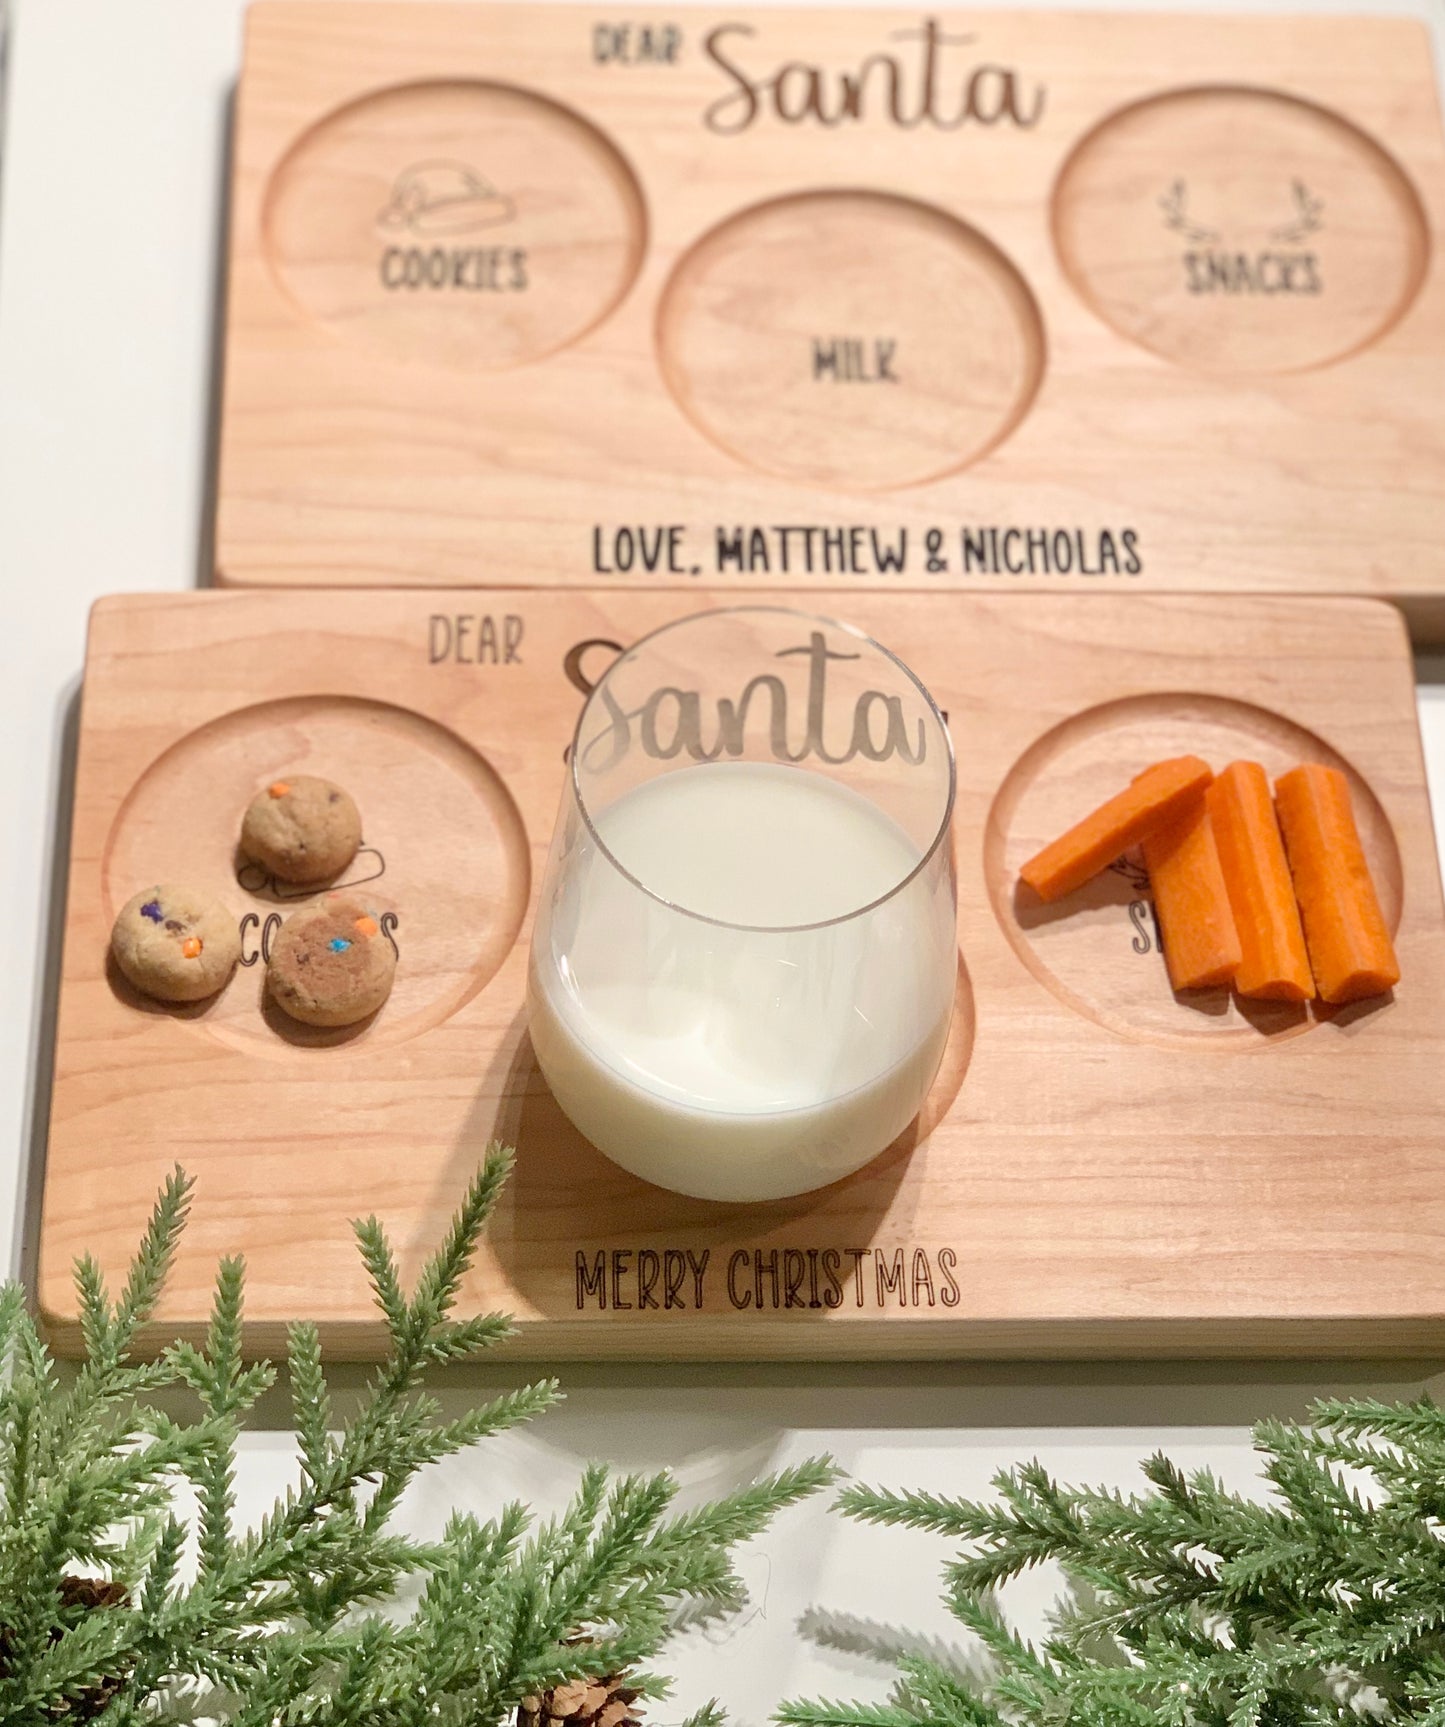 Santa Cookies & Milk & Reindeer Snacks Plate/Tray